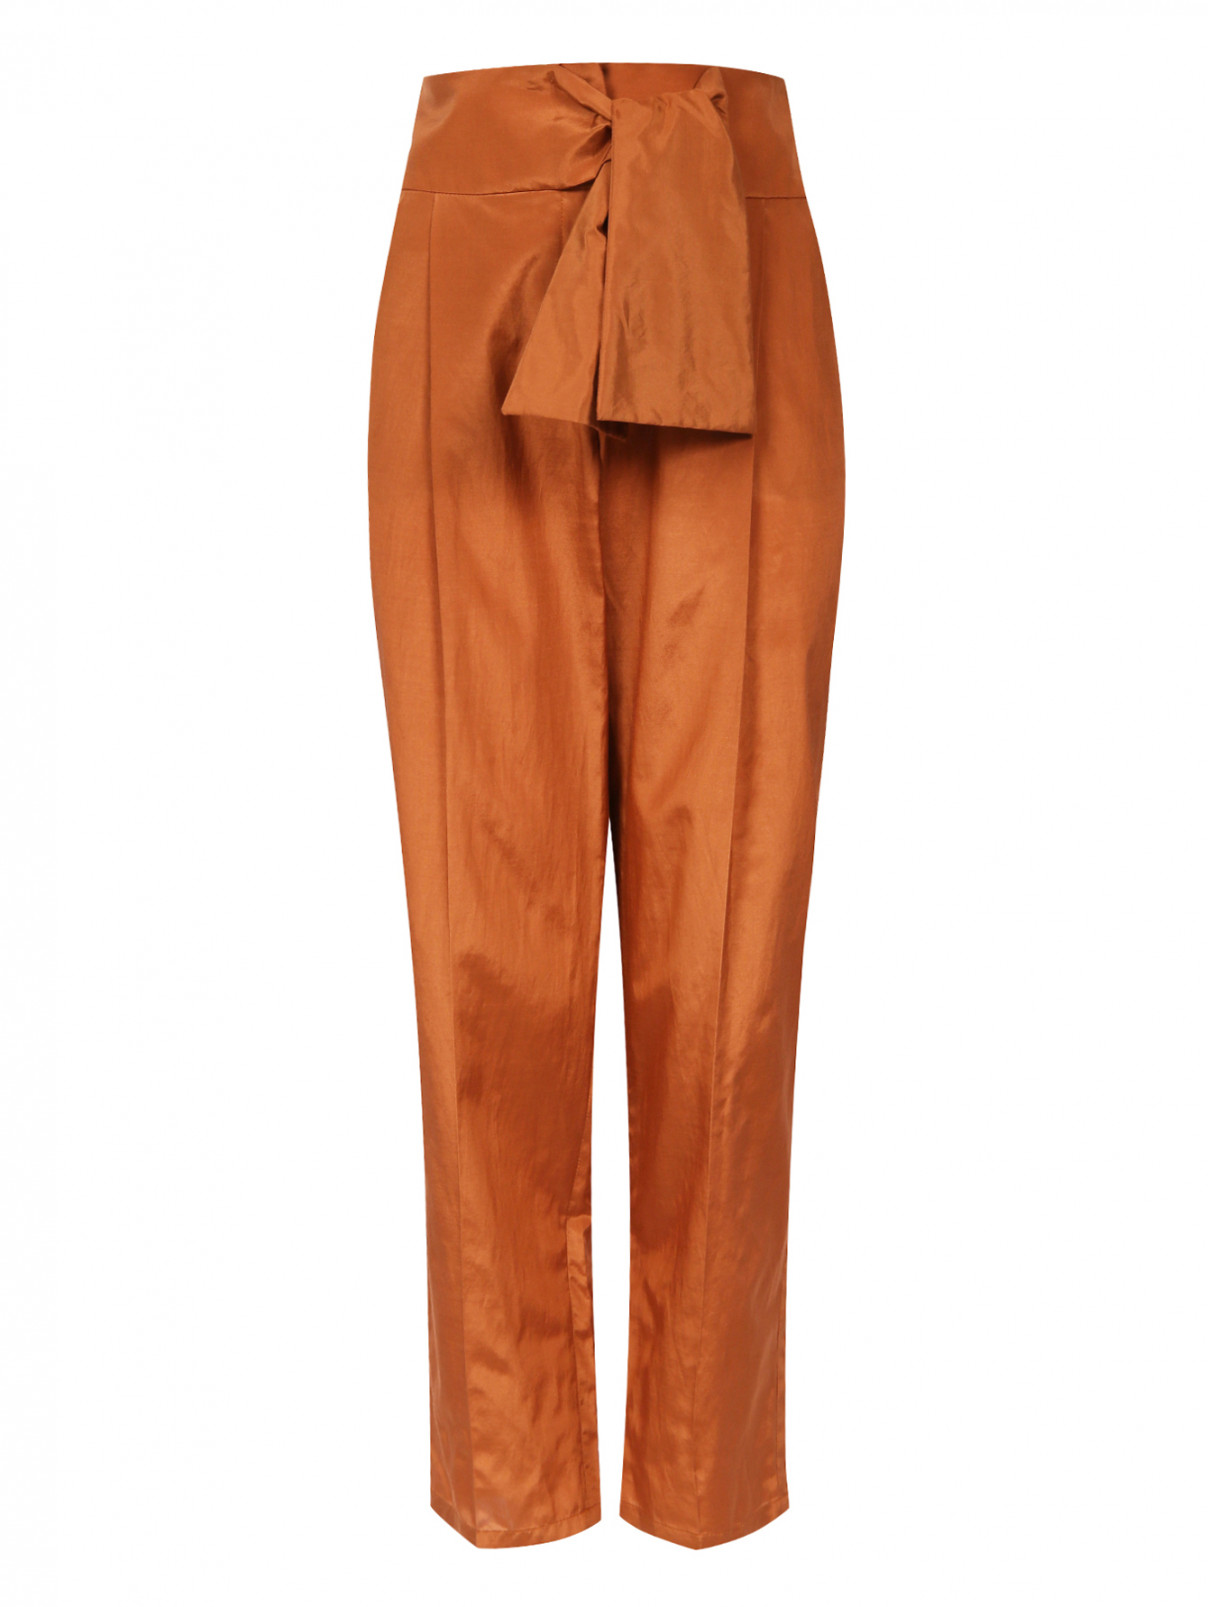 Свободные укороченные брюки из хлопка и шелка с декоративным бантом Emporio Armani  –  Общий вид  – Цвет:  Оранжевый